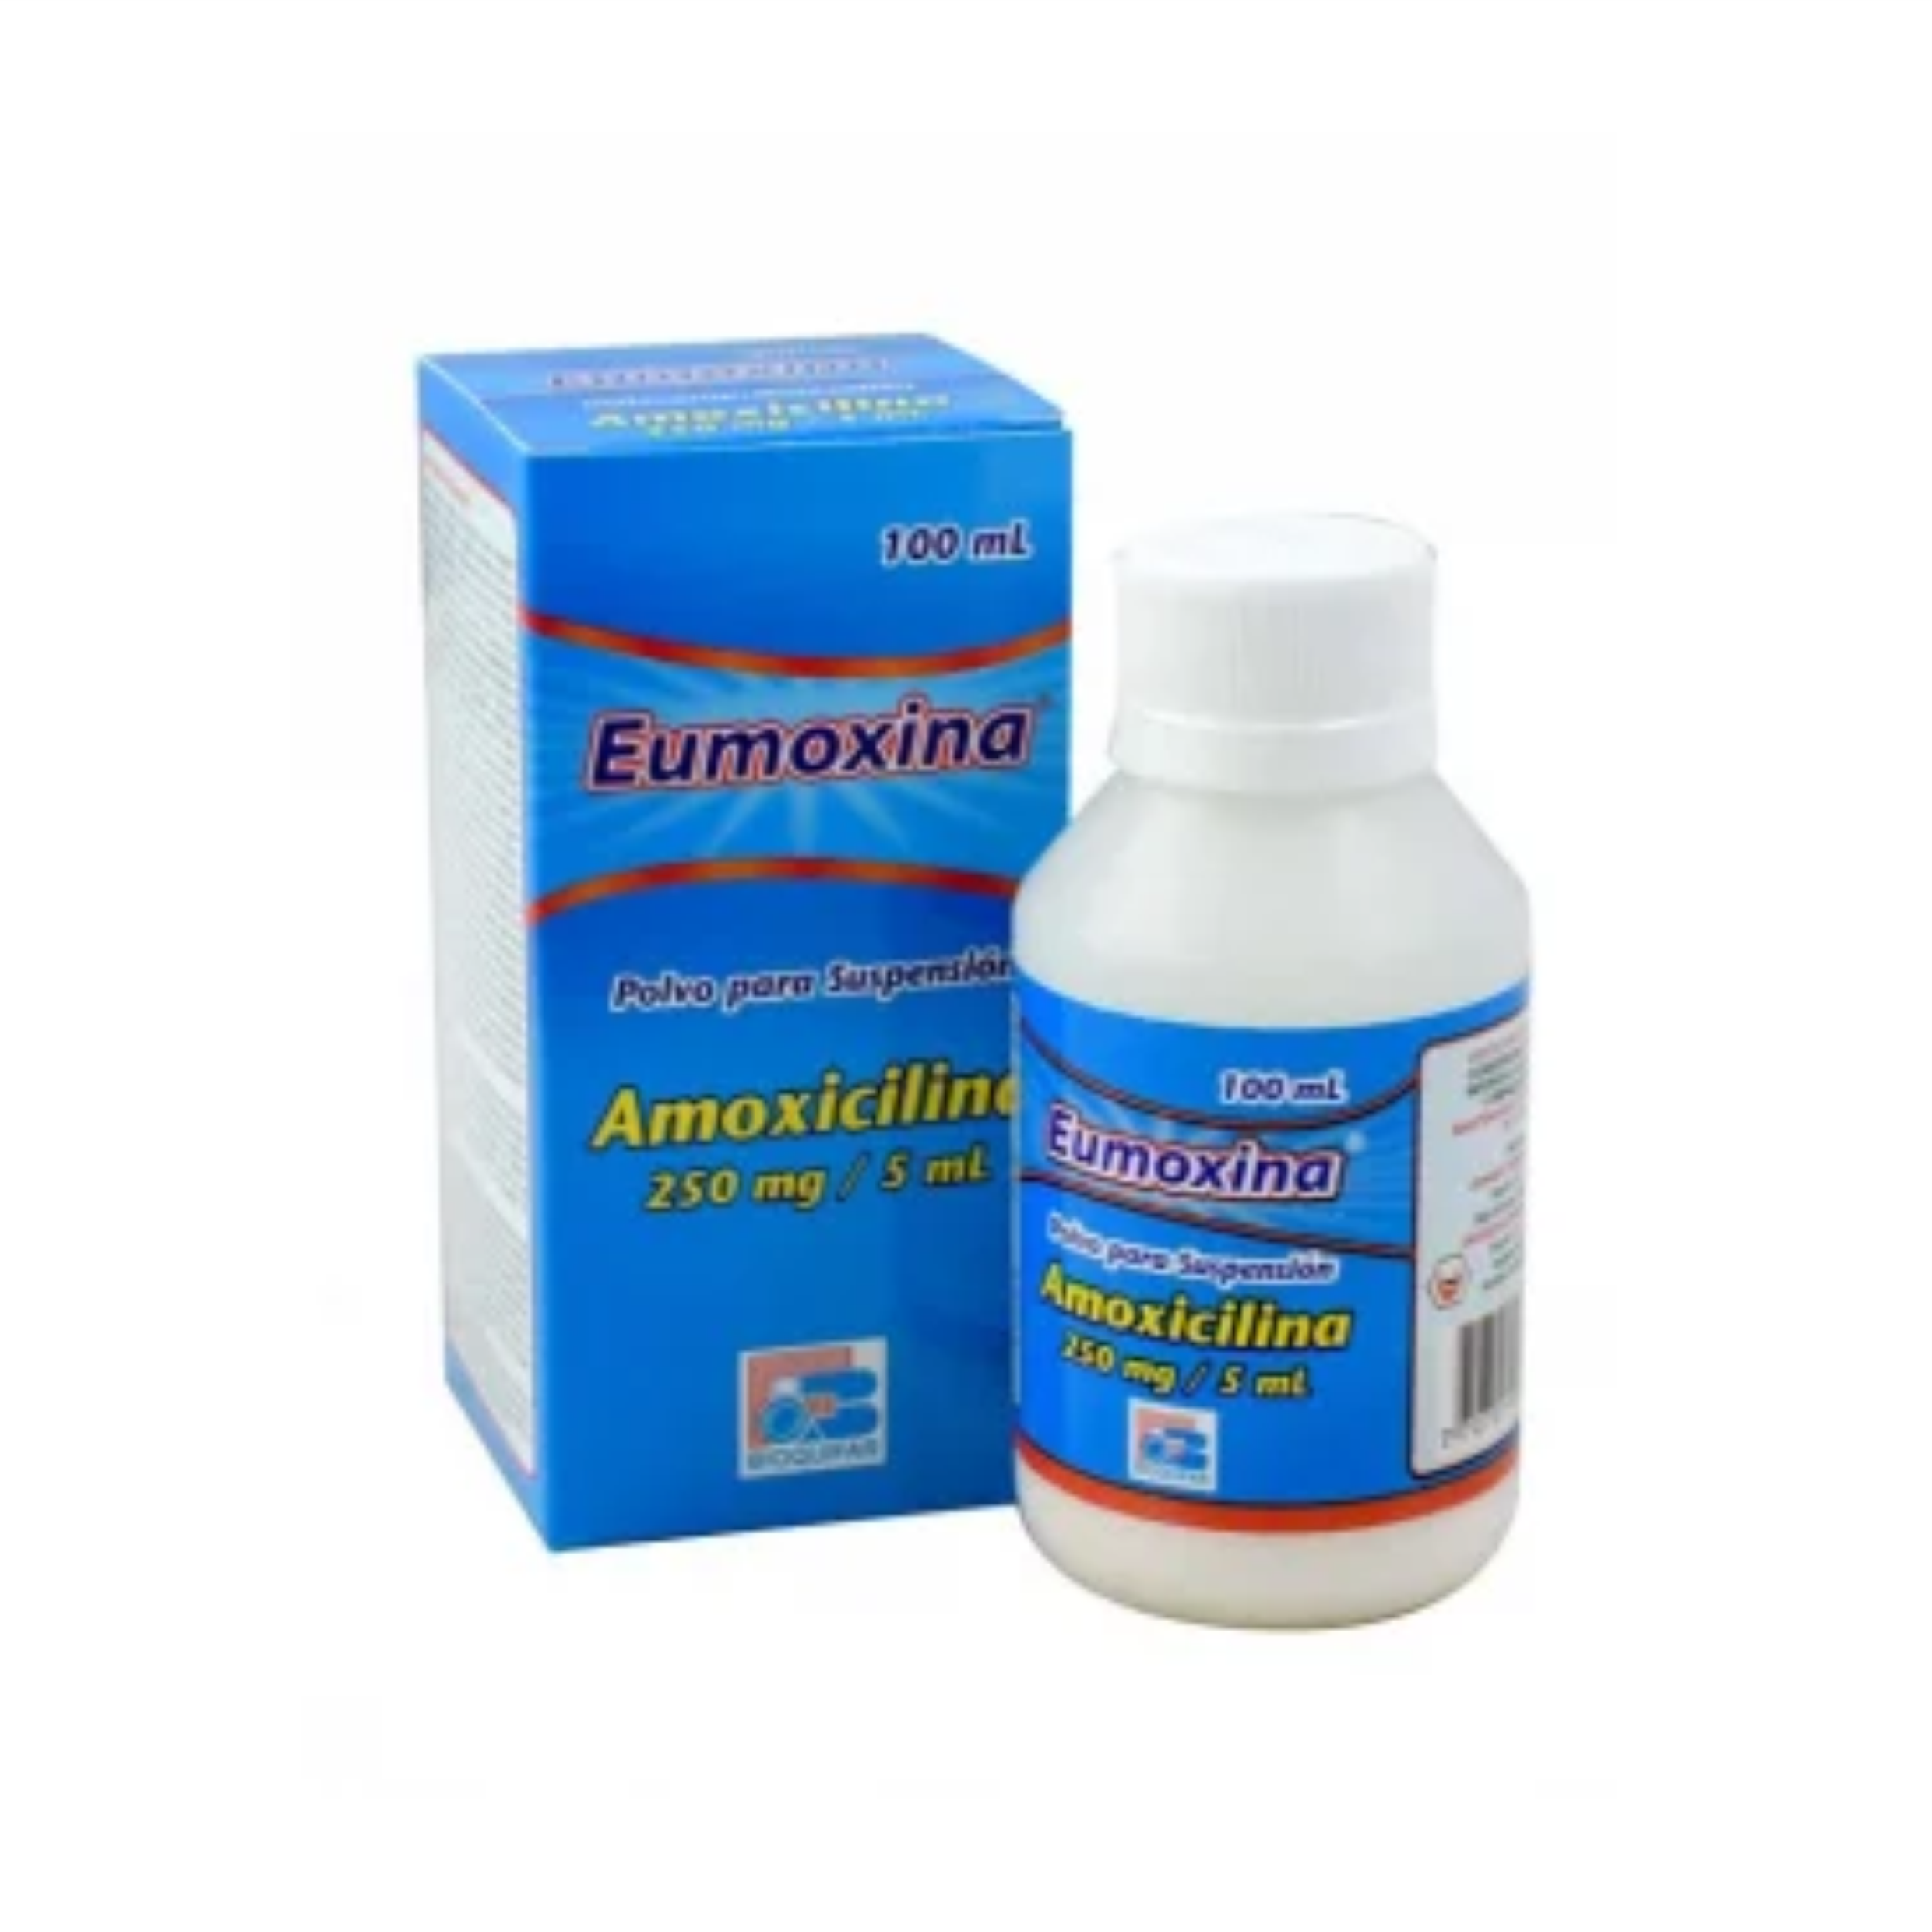 Eumoxina 250 mg/5 mL Polvo para suspensión 100 mL